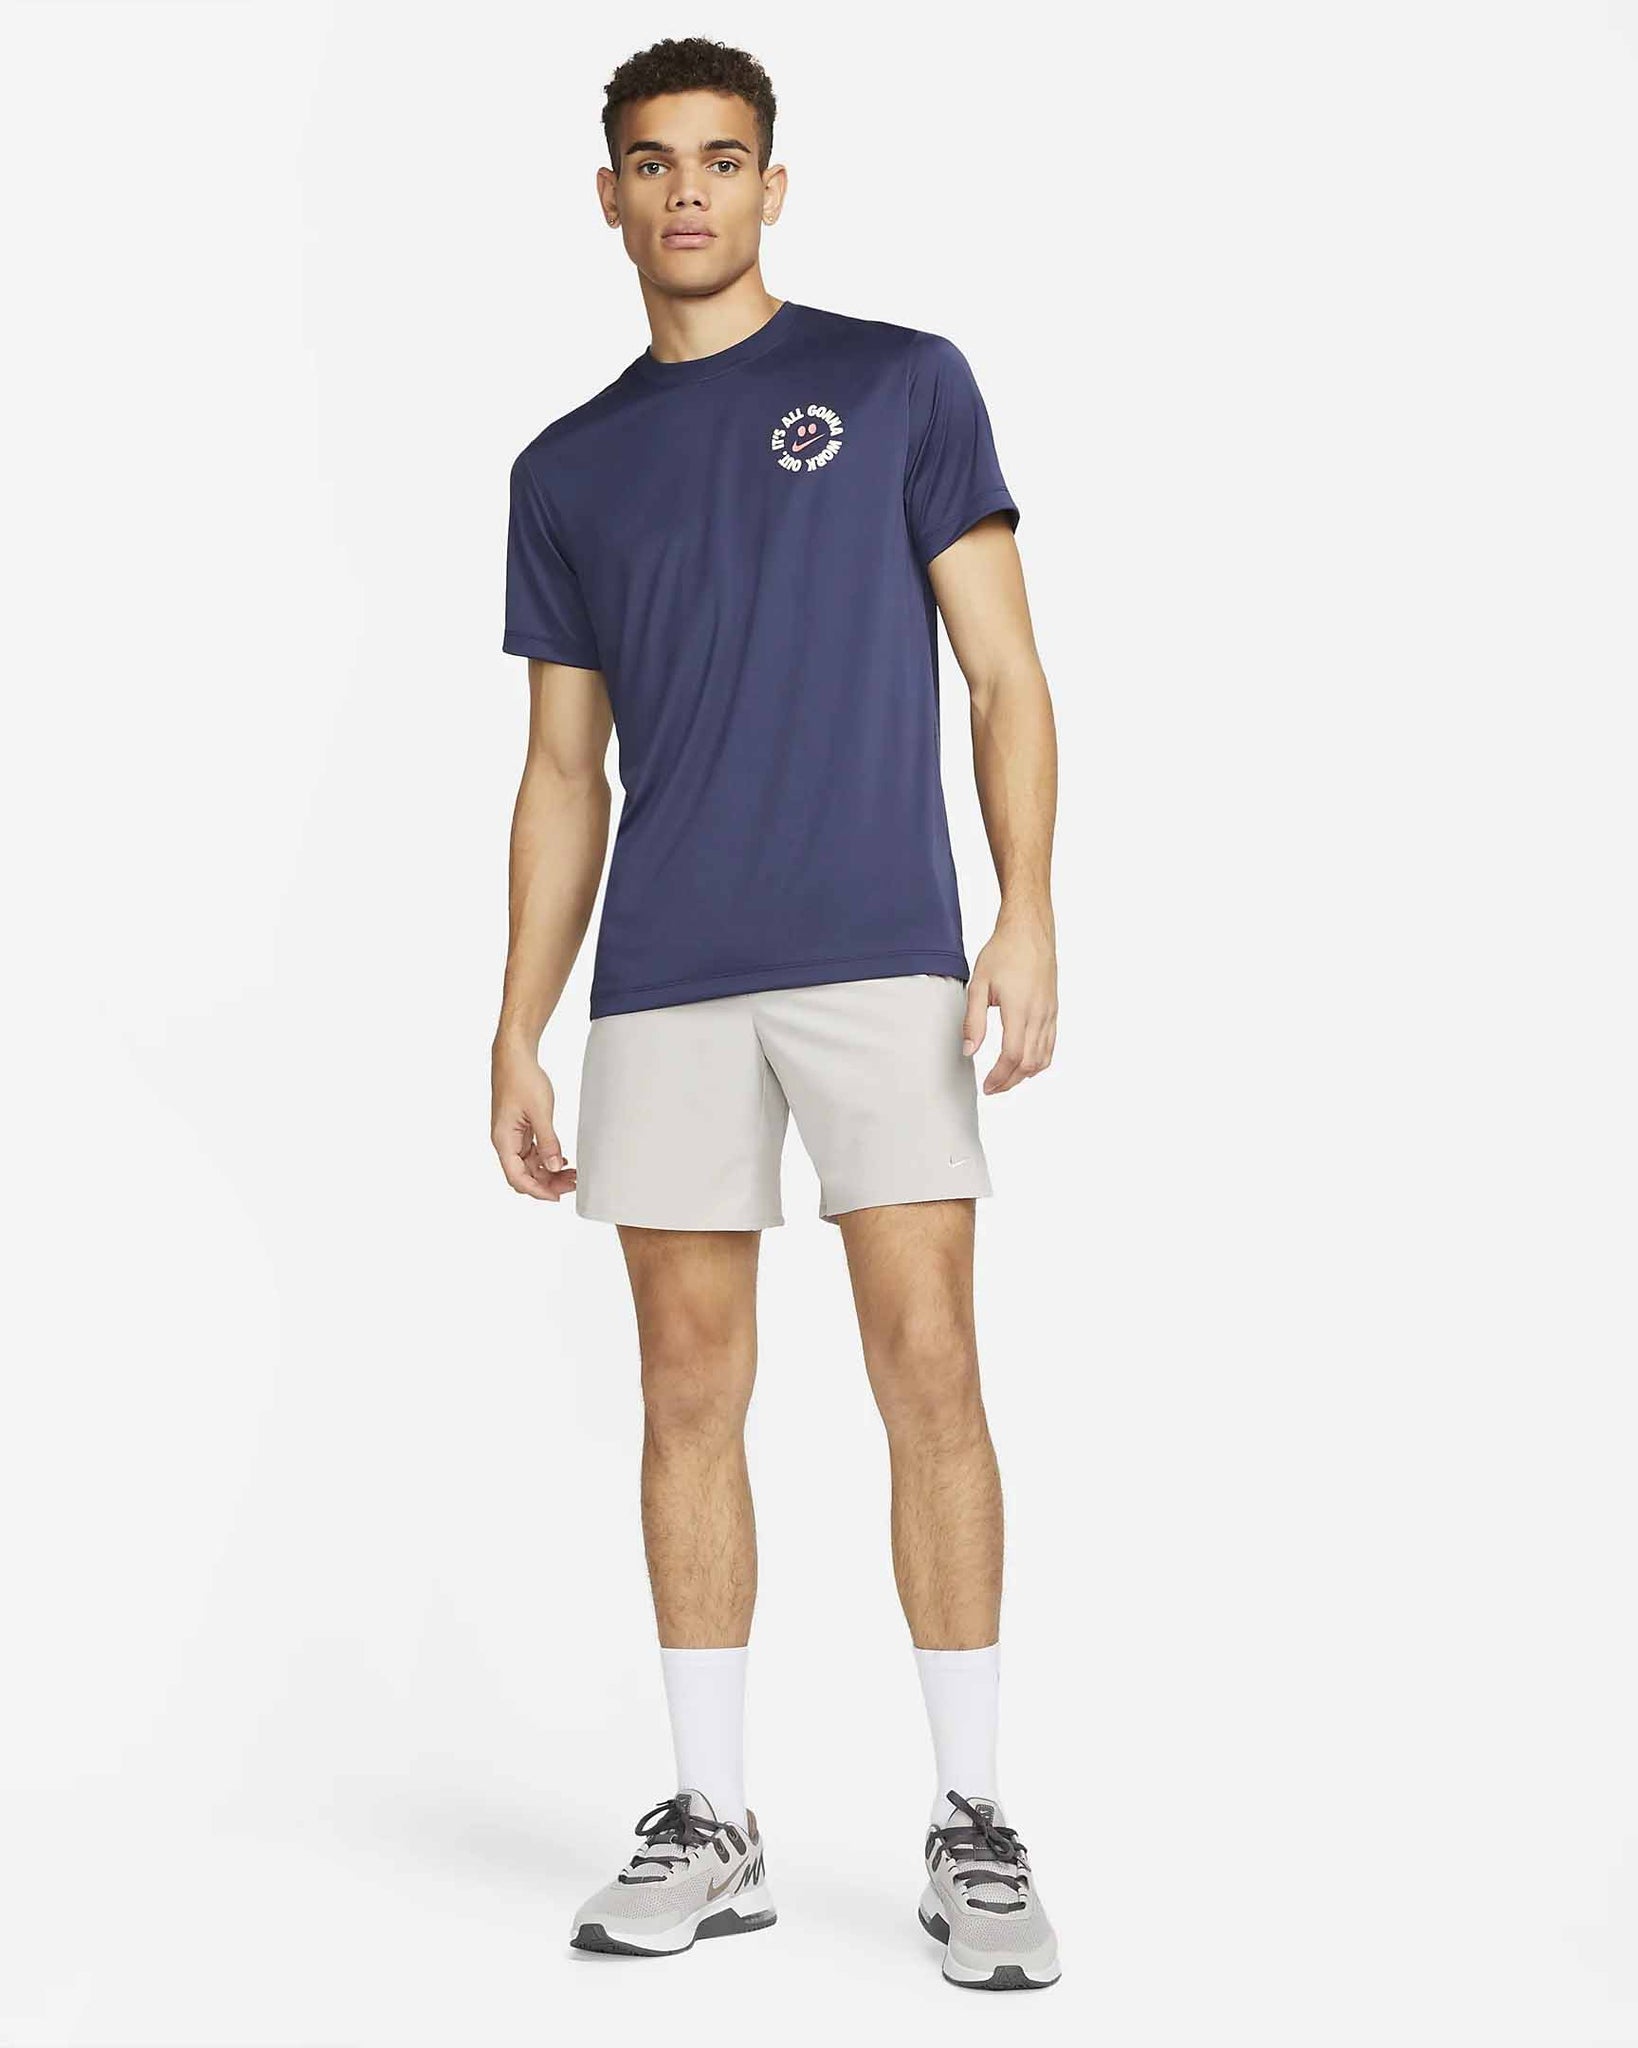 Nike - It's All - T-shirt d'entraînement DRI-Fit avec jupe